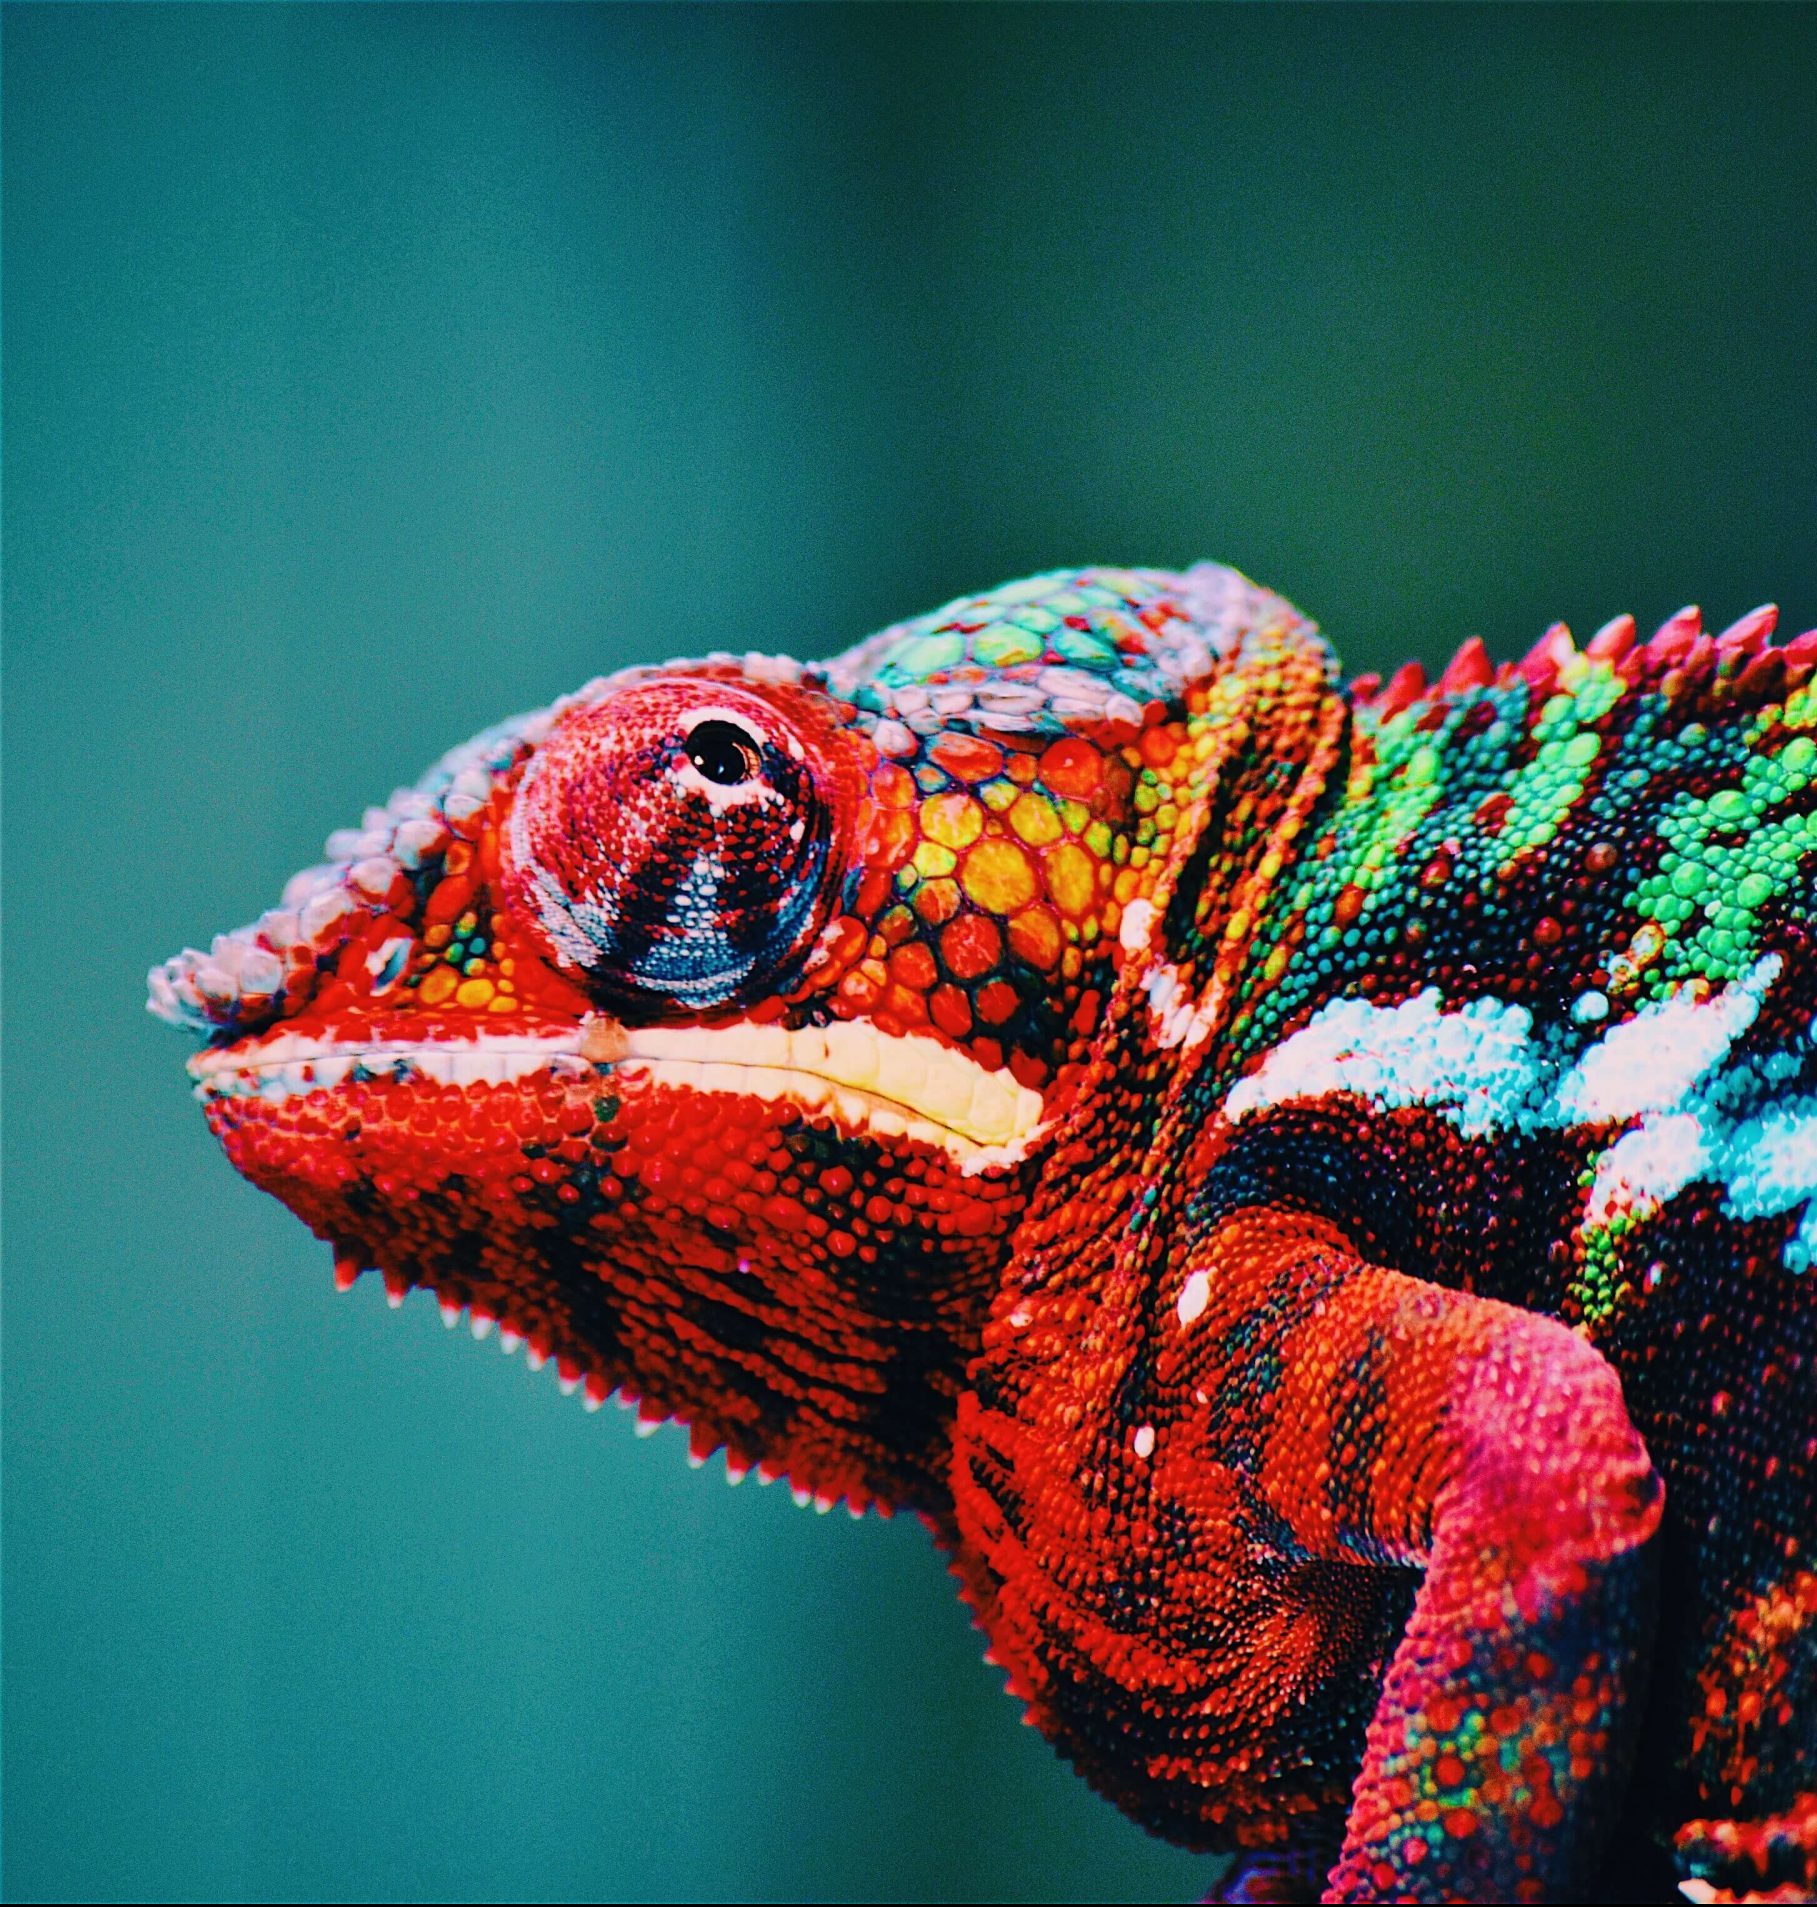 Rainbow chameleon